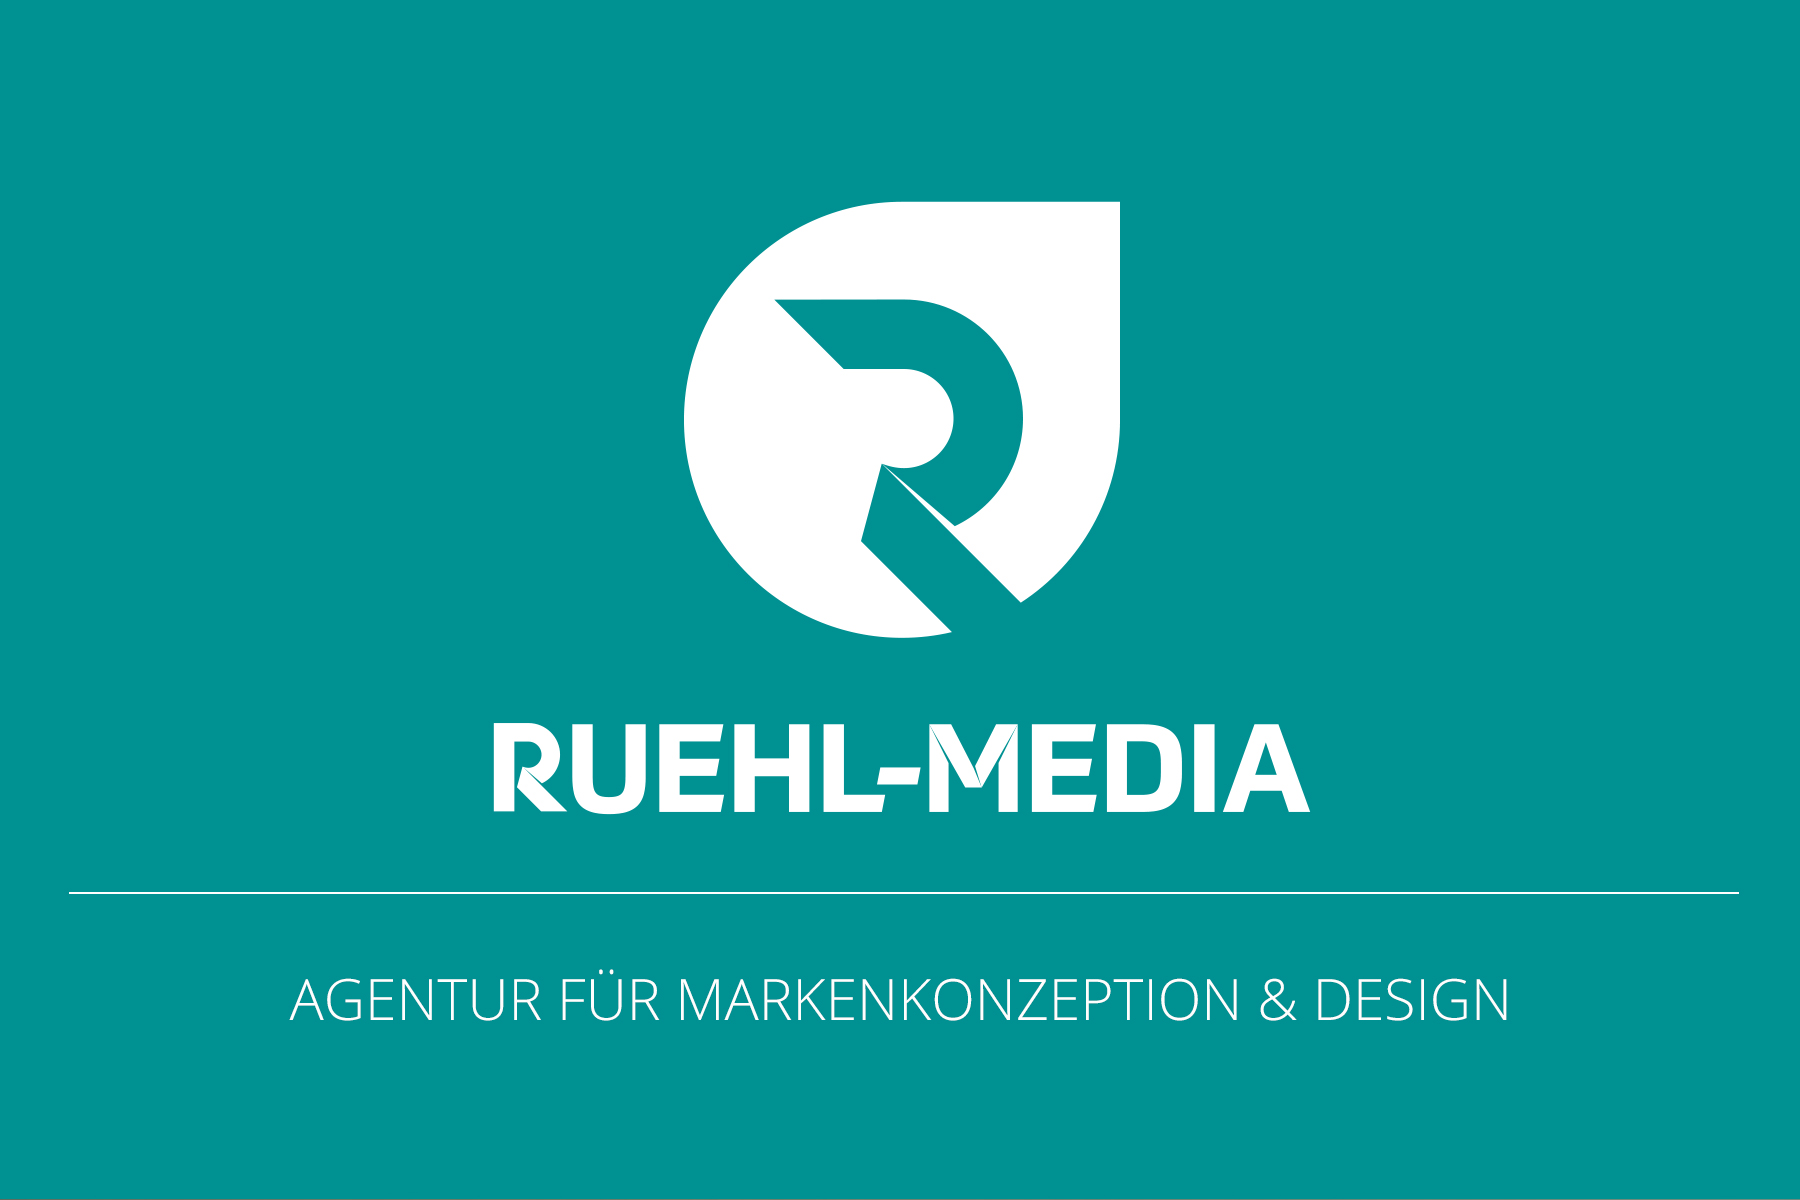 (c) Ruehl-media.de